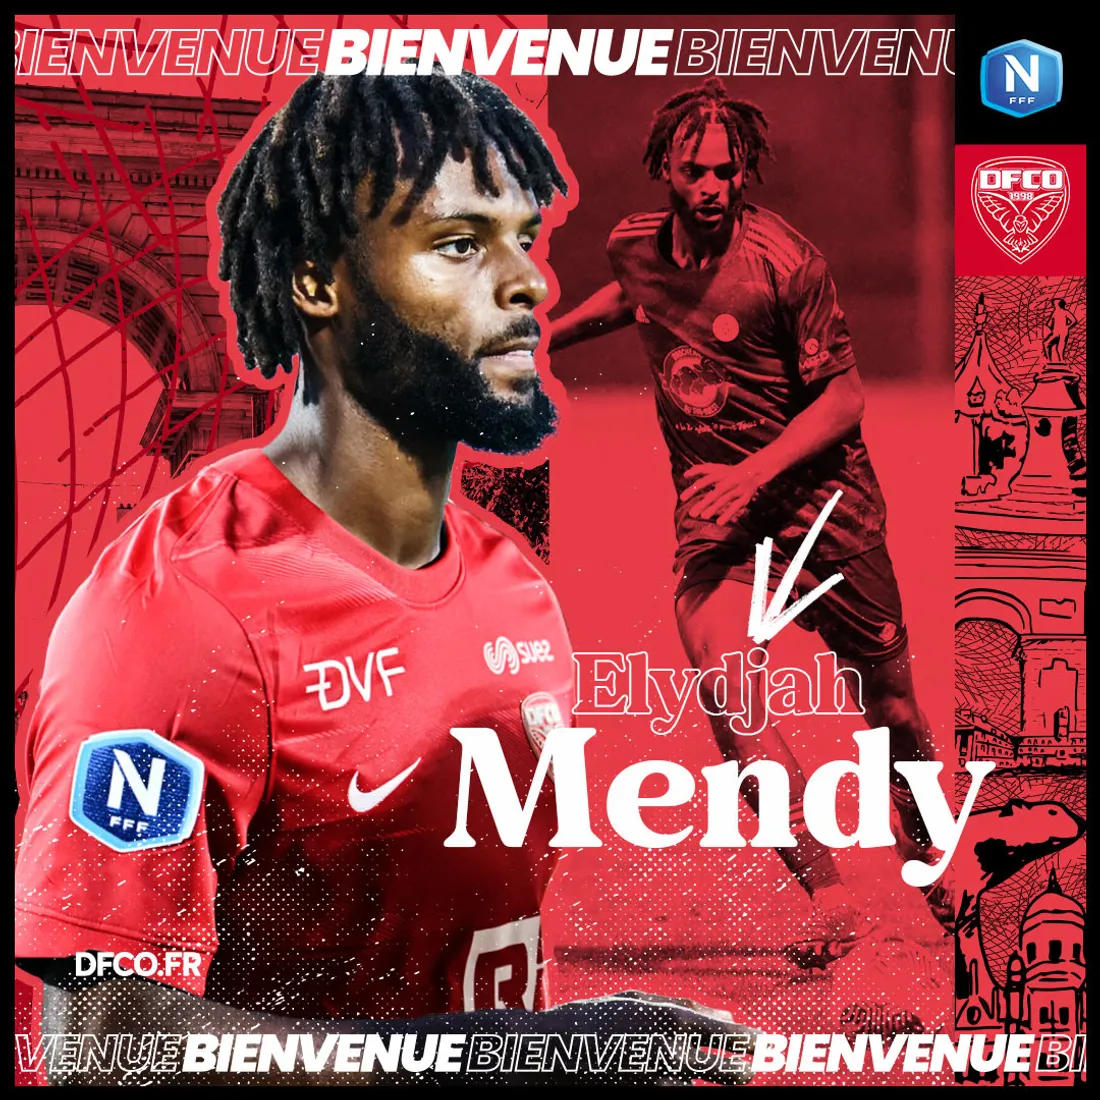 Elydjah Mendy est un défenseur axial gaucher, formé au Pau FC et révélé au FC Libourne.